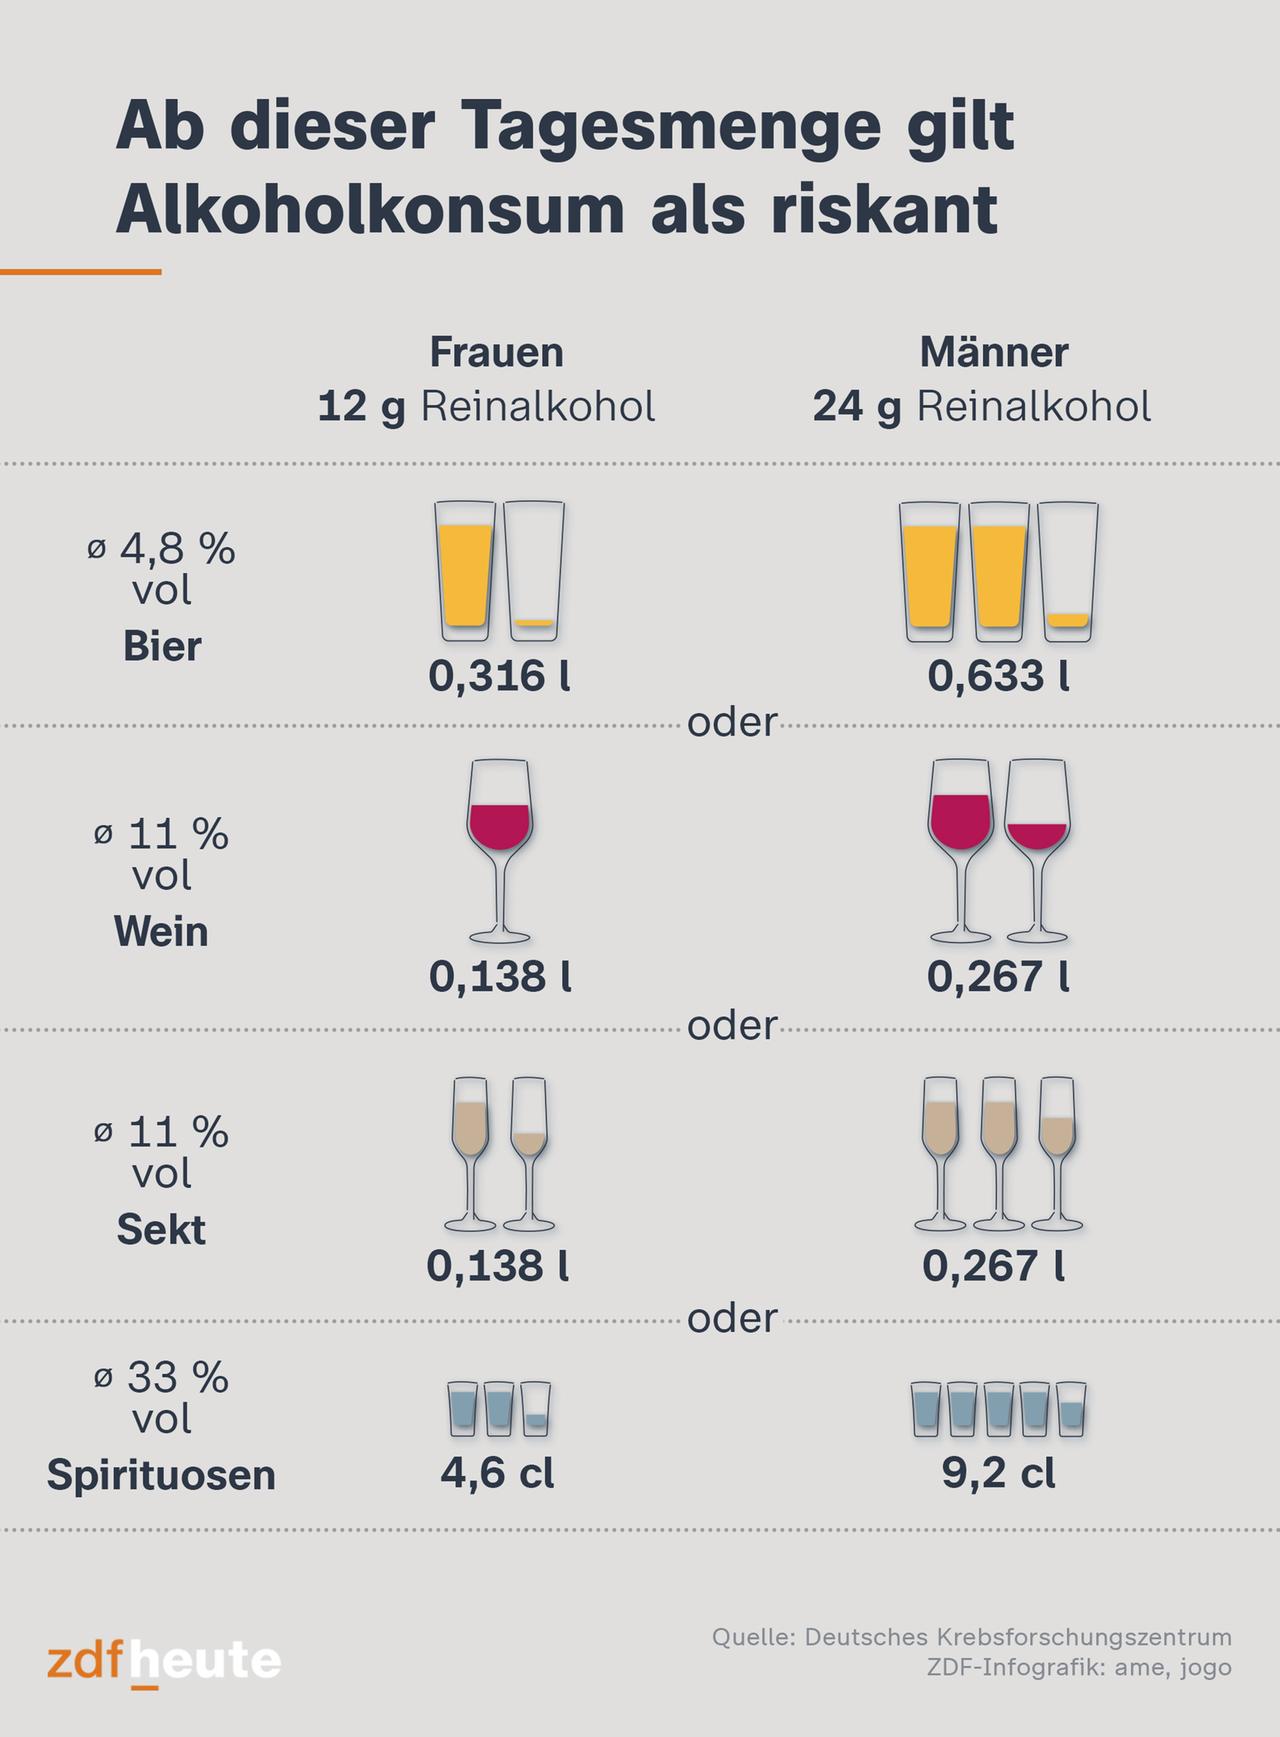 Grafik zeigt, ab wann Alkoholkonsum als riskant gilt.